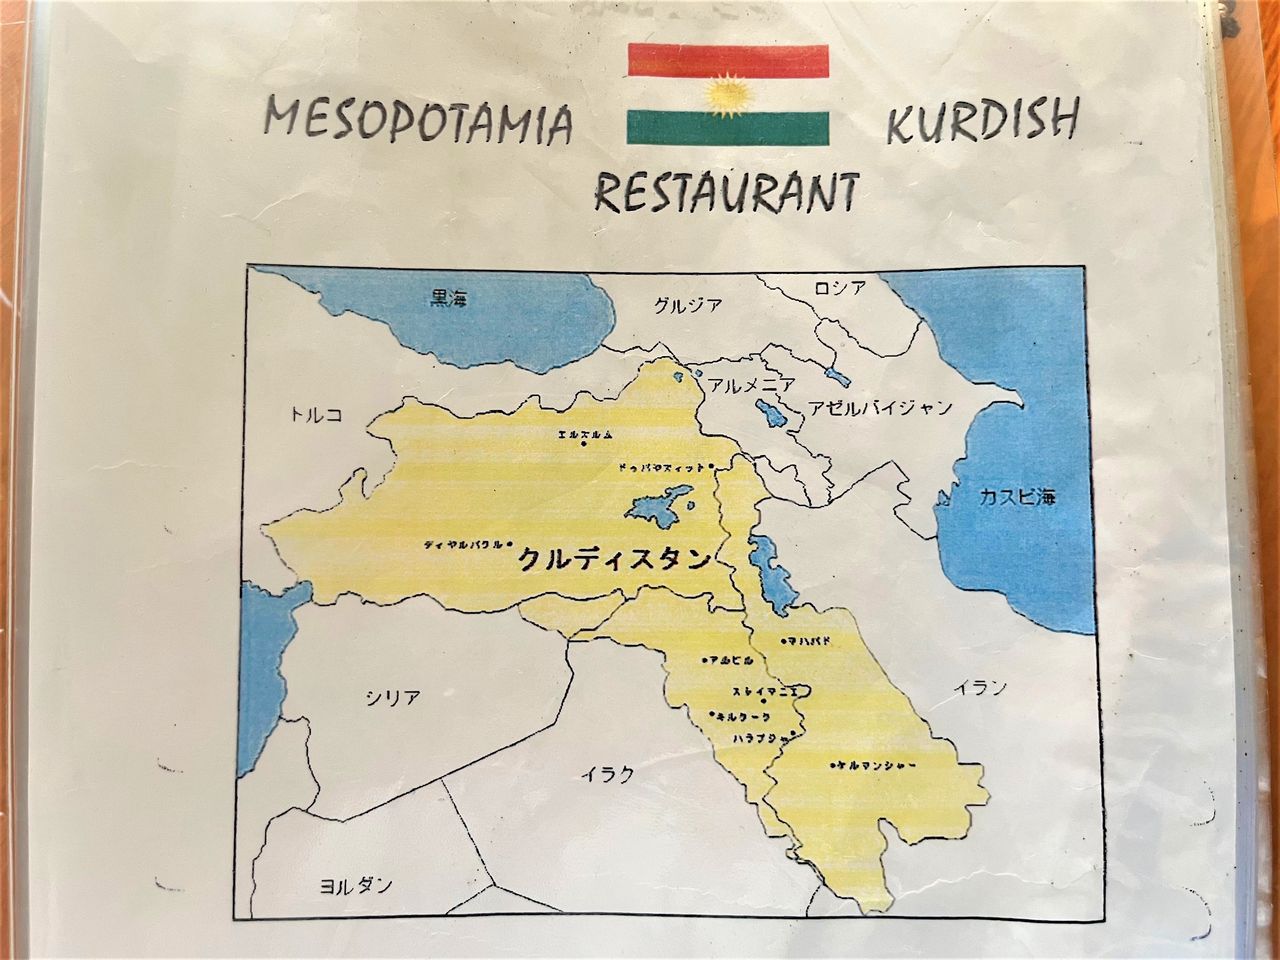 Tout en sélectionnant votre menu, vous pouvez déjà vous familiariser avec la région du Kurdistan.